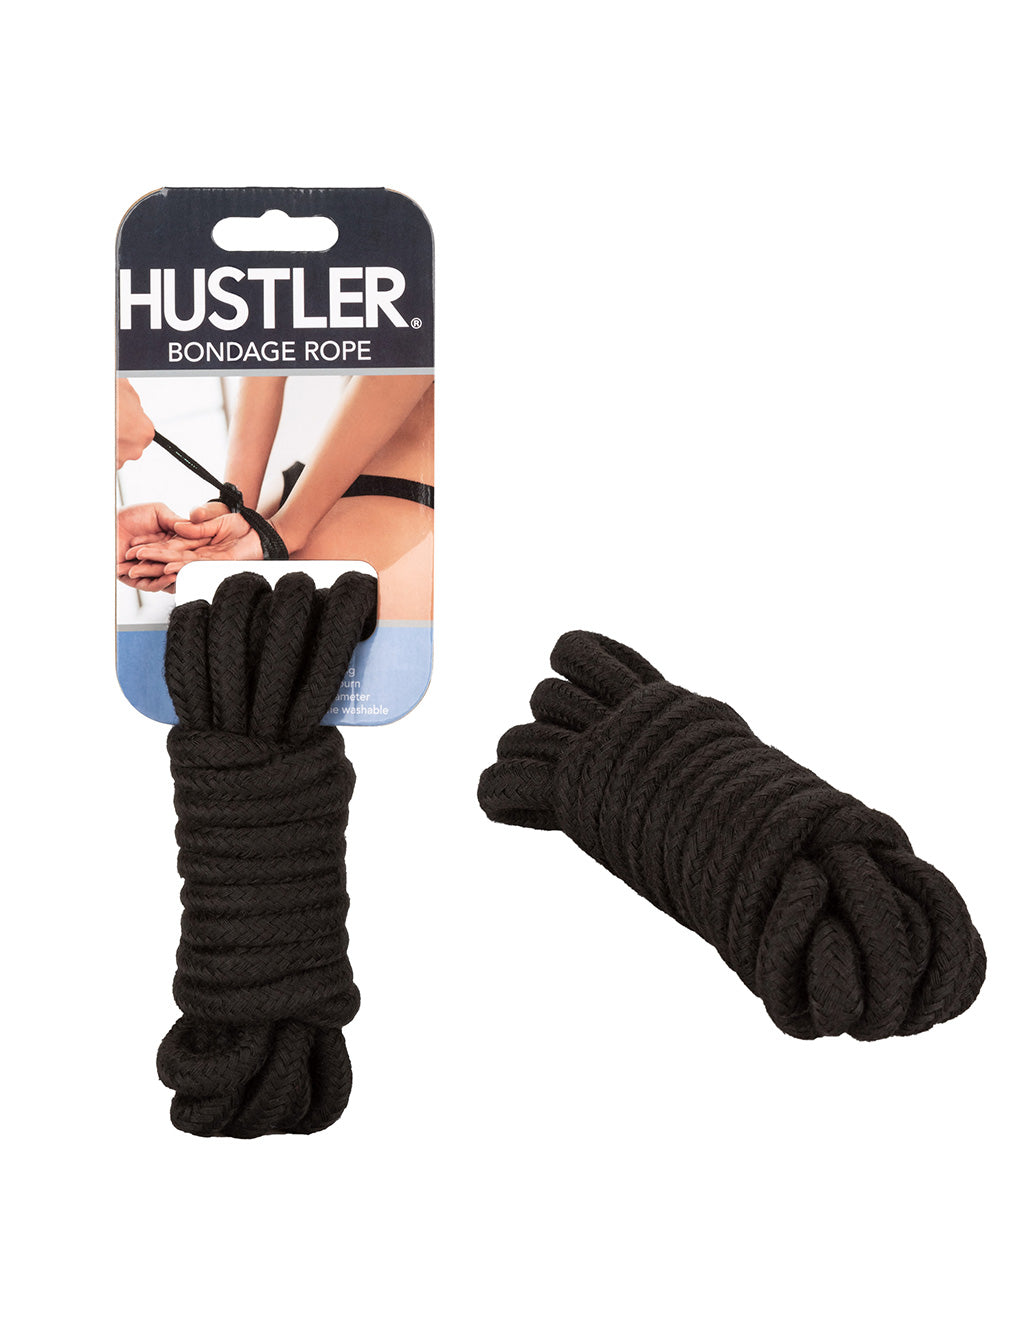 Hustler® Bondage Rope- Black- With package